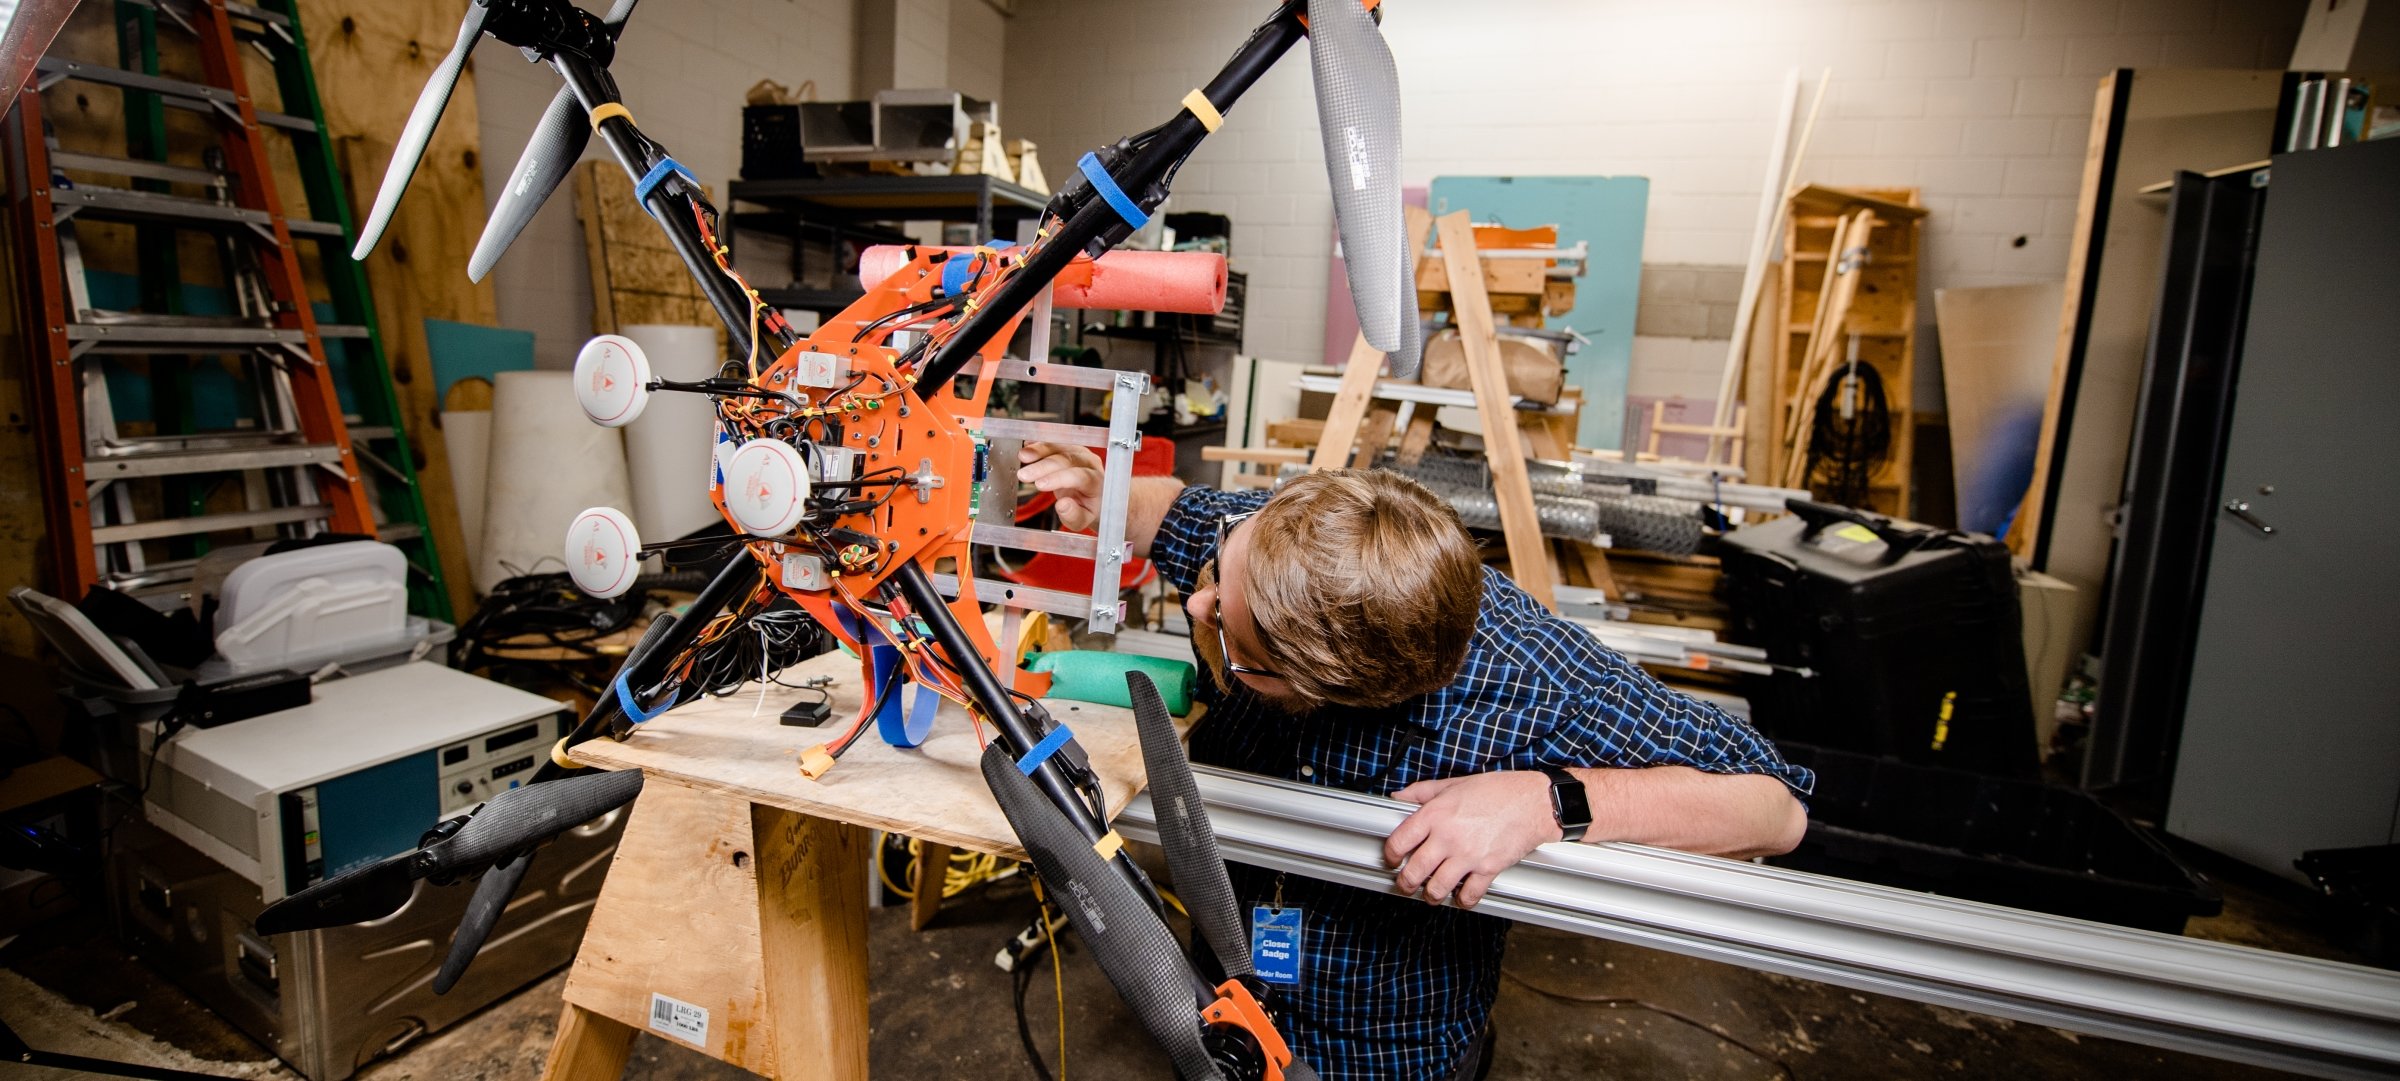 robotics engineering robots